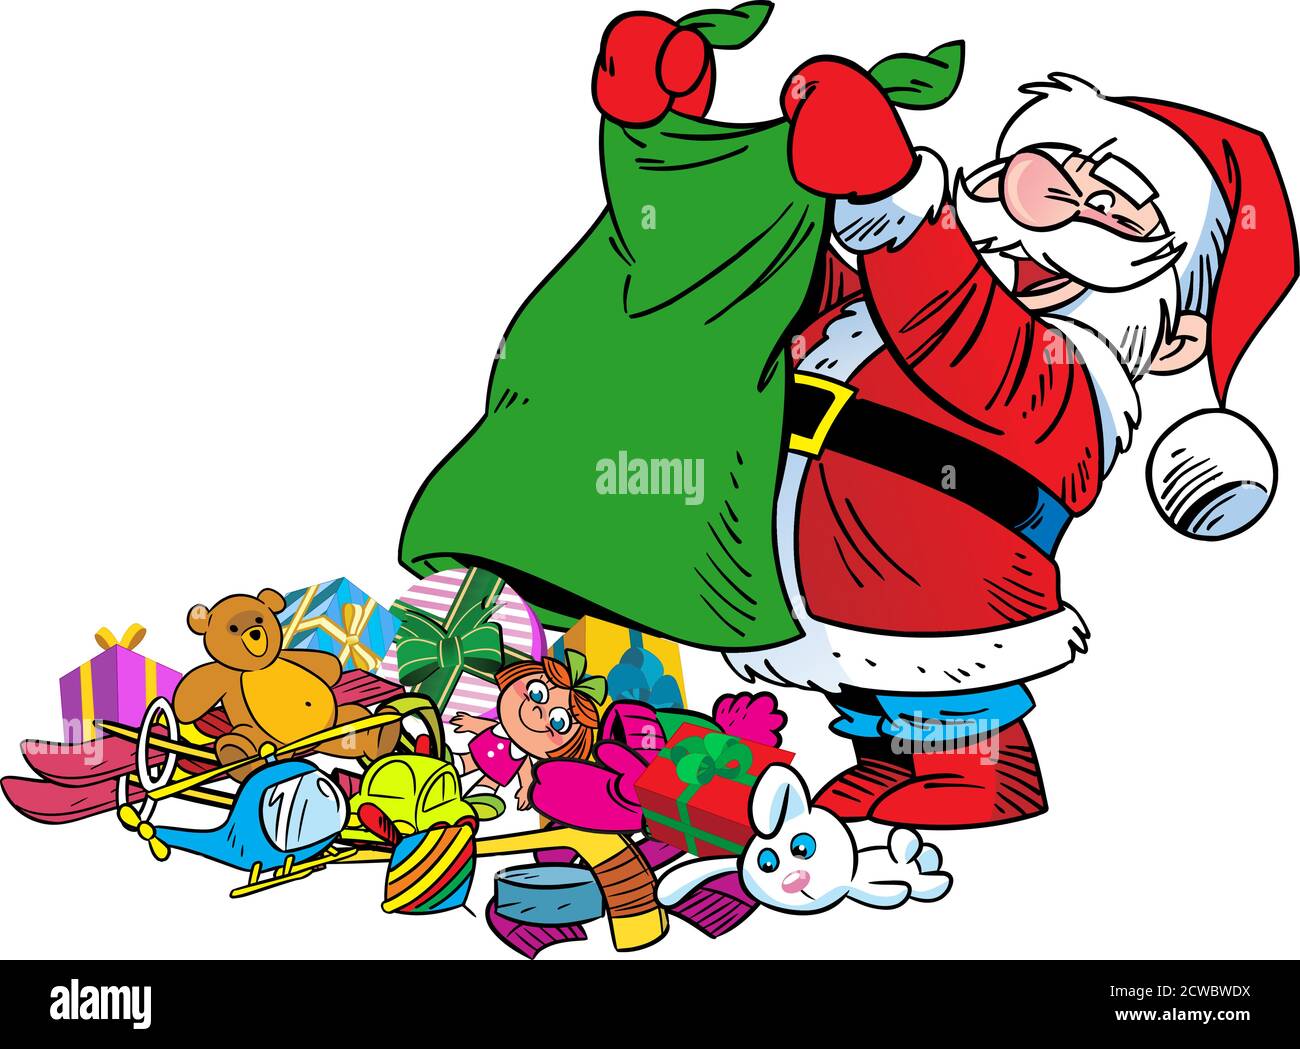 L'illustrazione vettoriale mostra un Babbo Natale allegro, che scuotono fuori i regali di Natale da una borsa. Illustrazione fatta in stile cartoon isolato su sfondo bianco Illustrazione Vettoriale